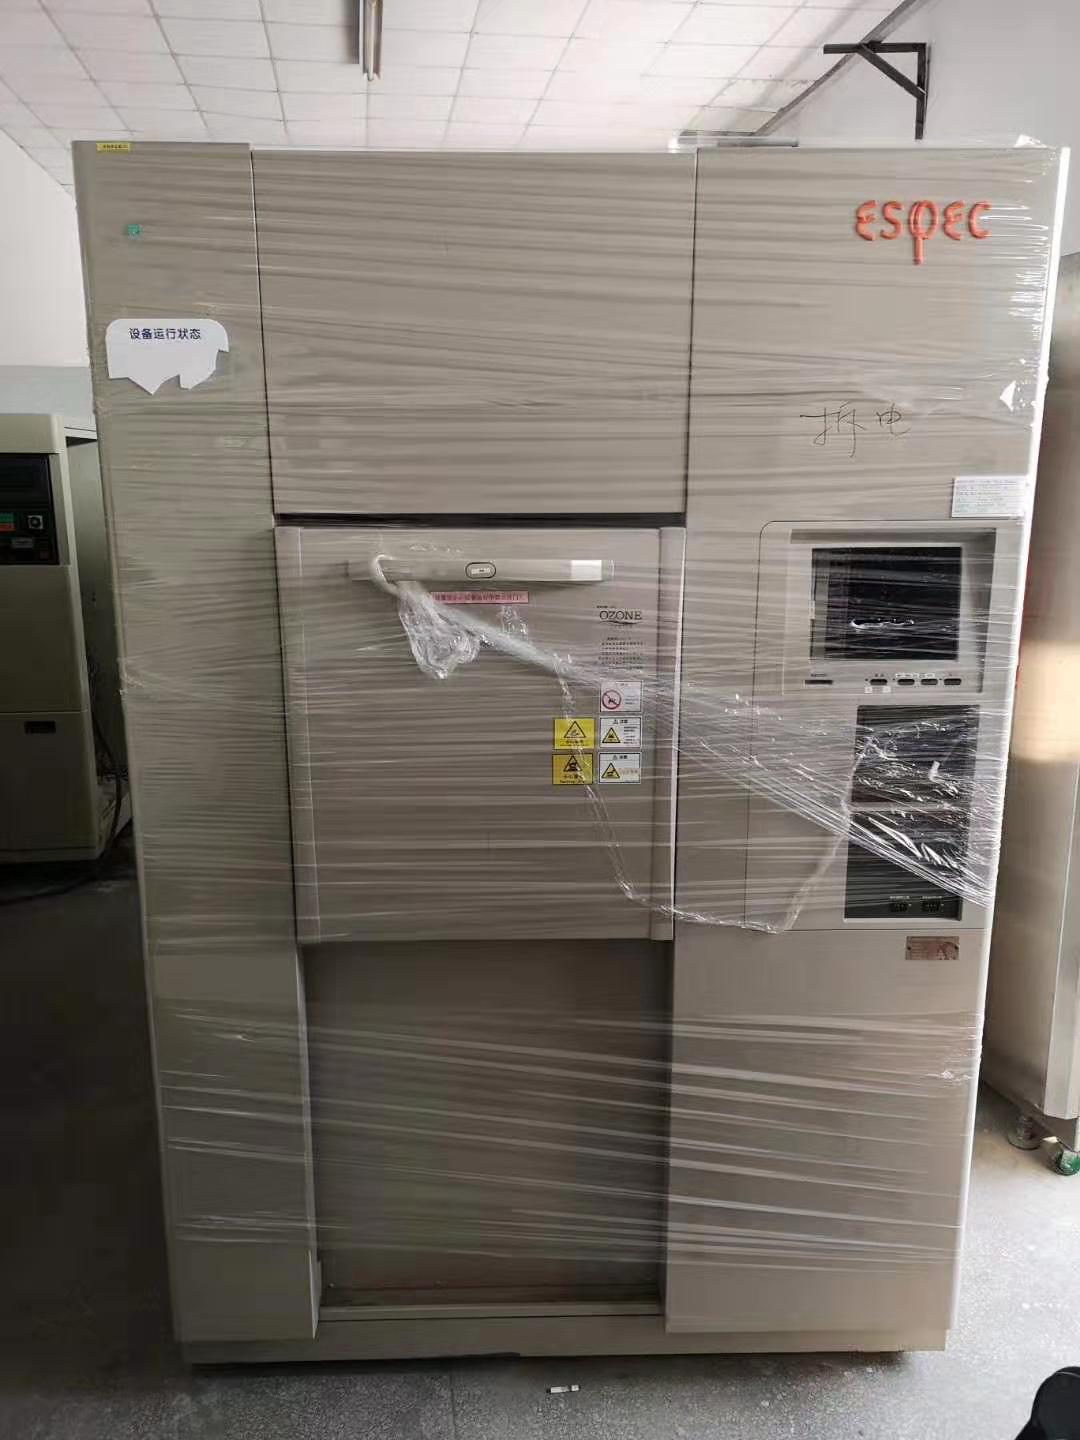 石家庄回收ESPEC二手冷热冲击试验箱厂家 现货供应